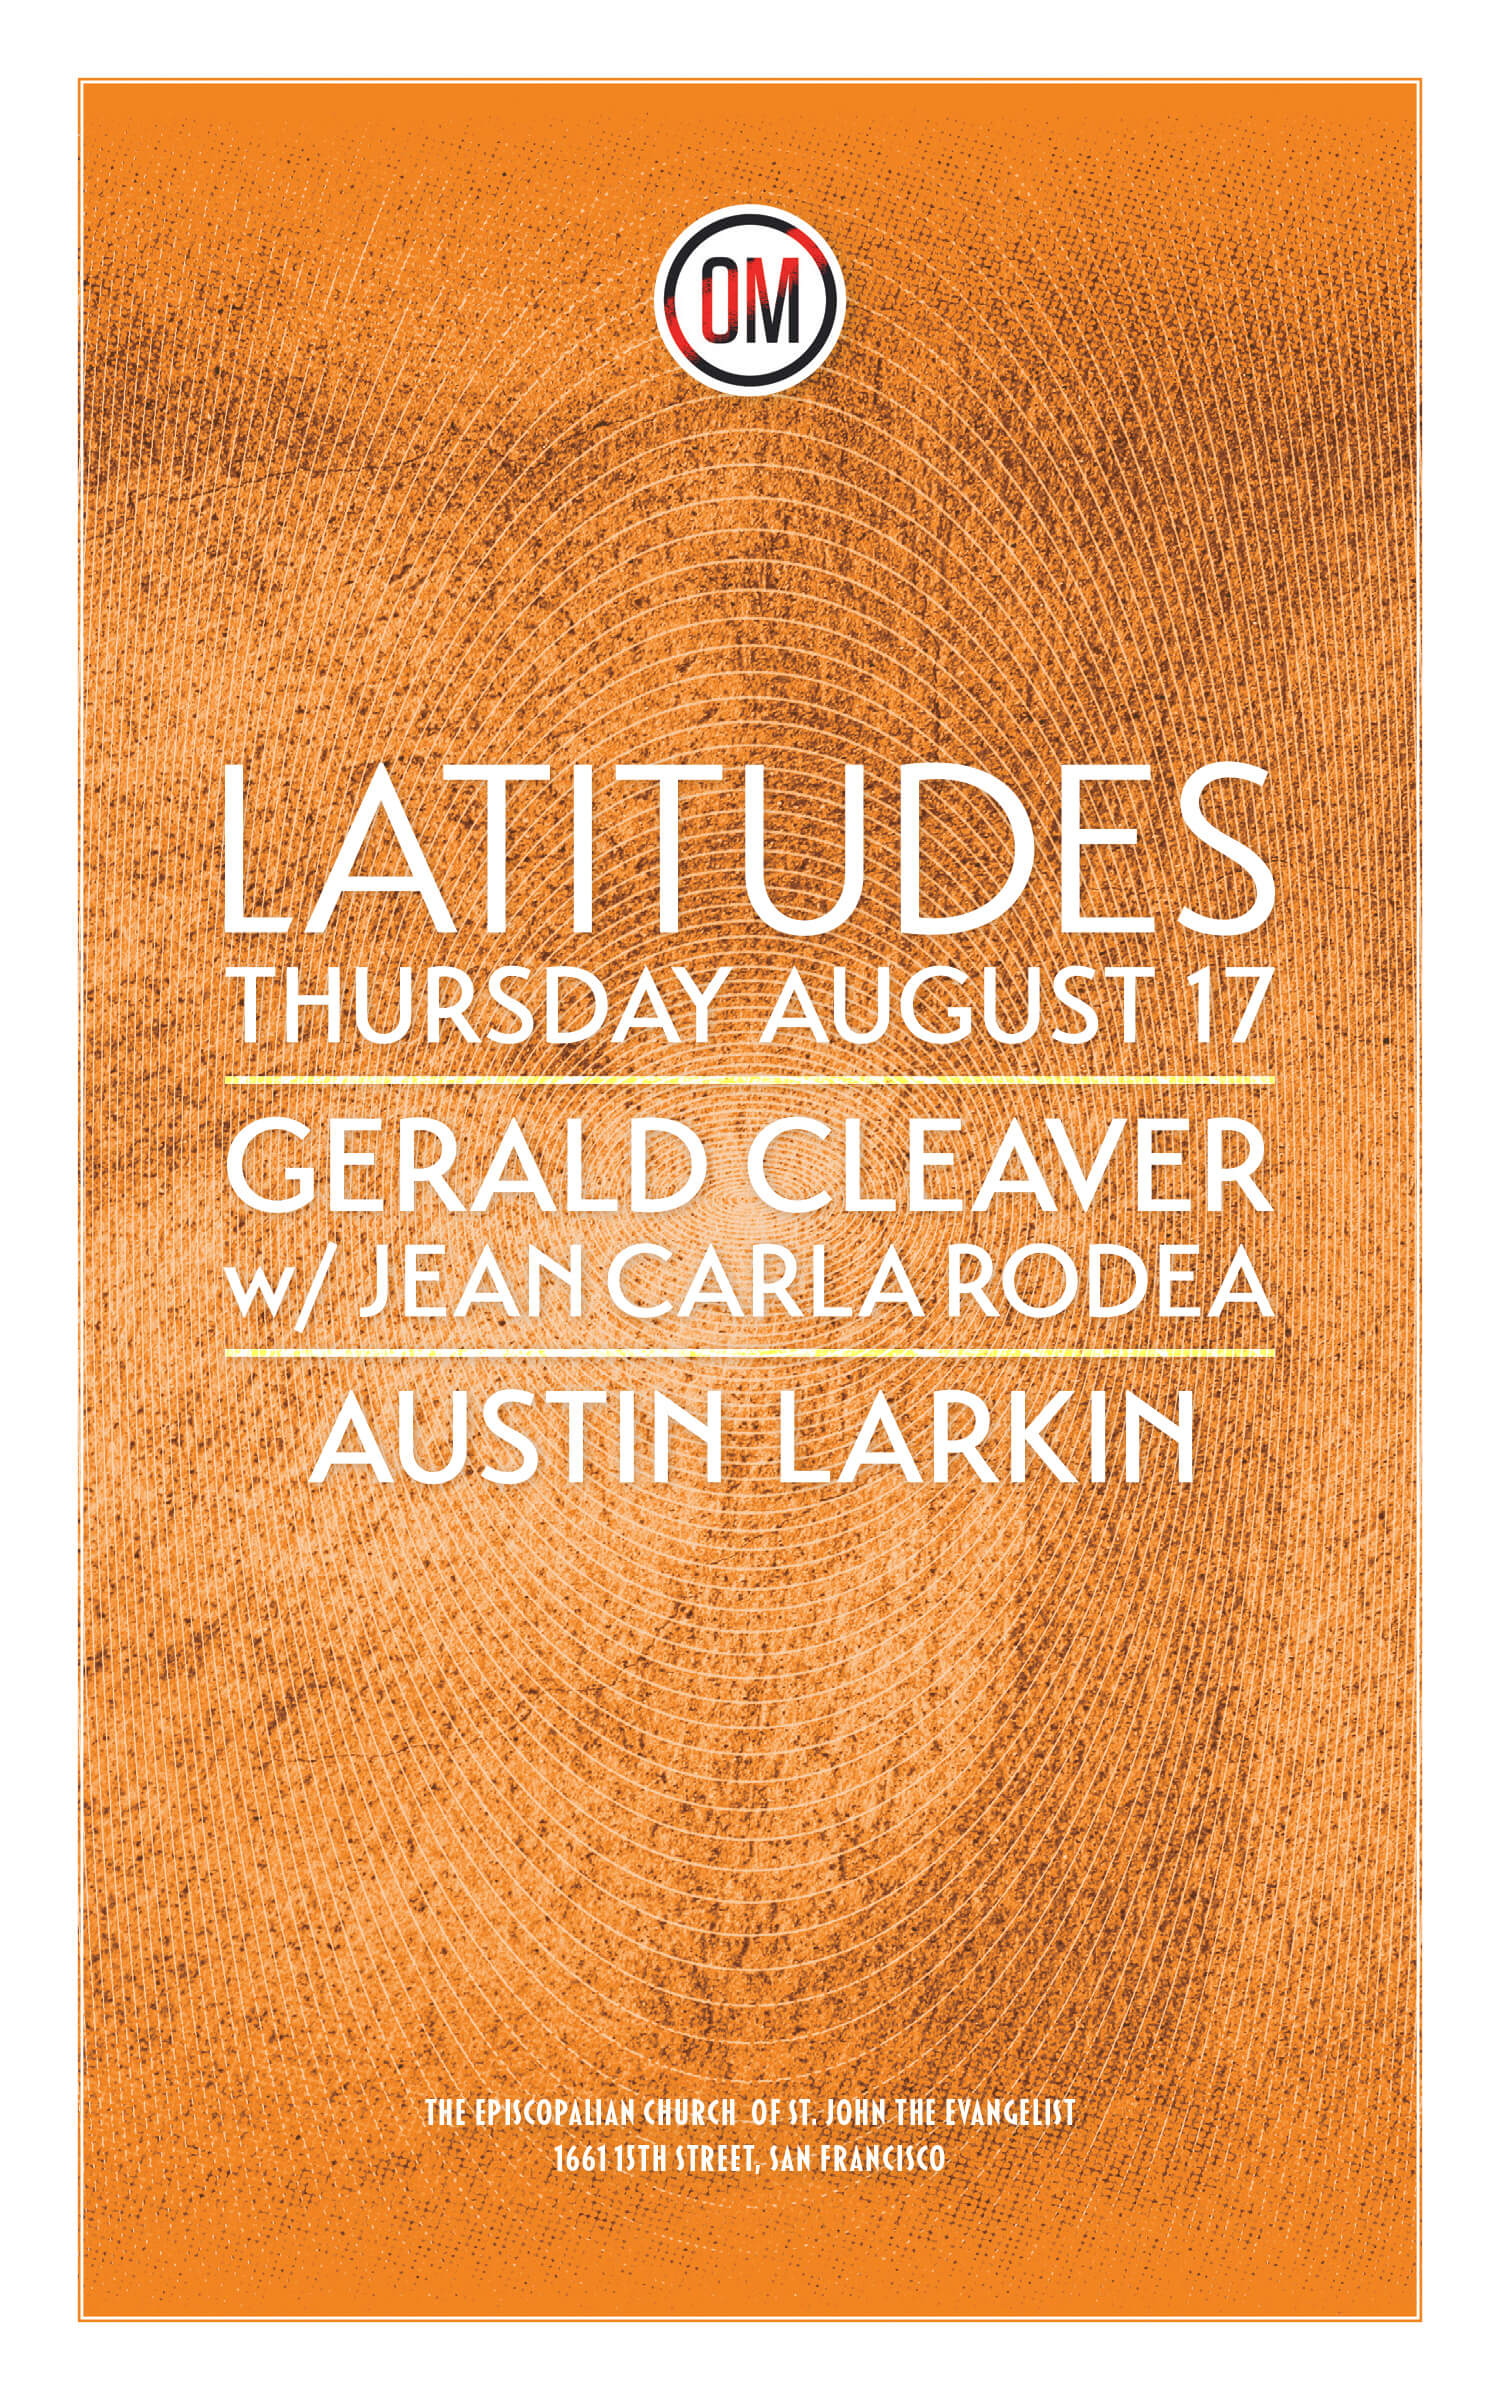 Latitudes Thursday August 17